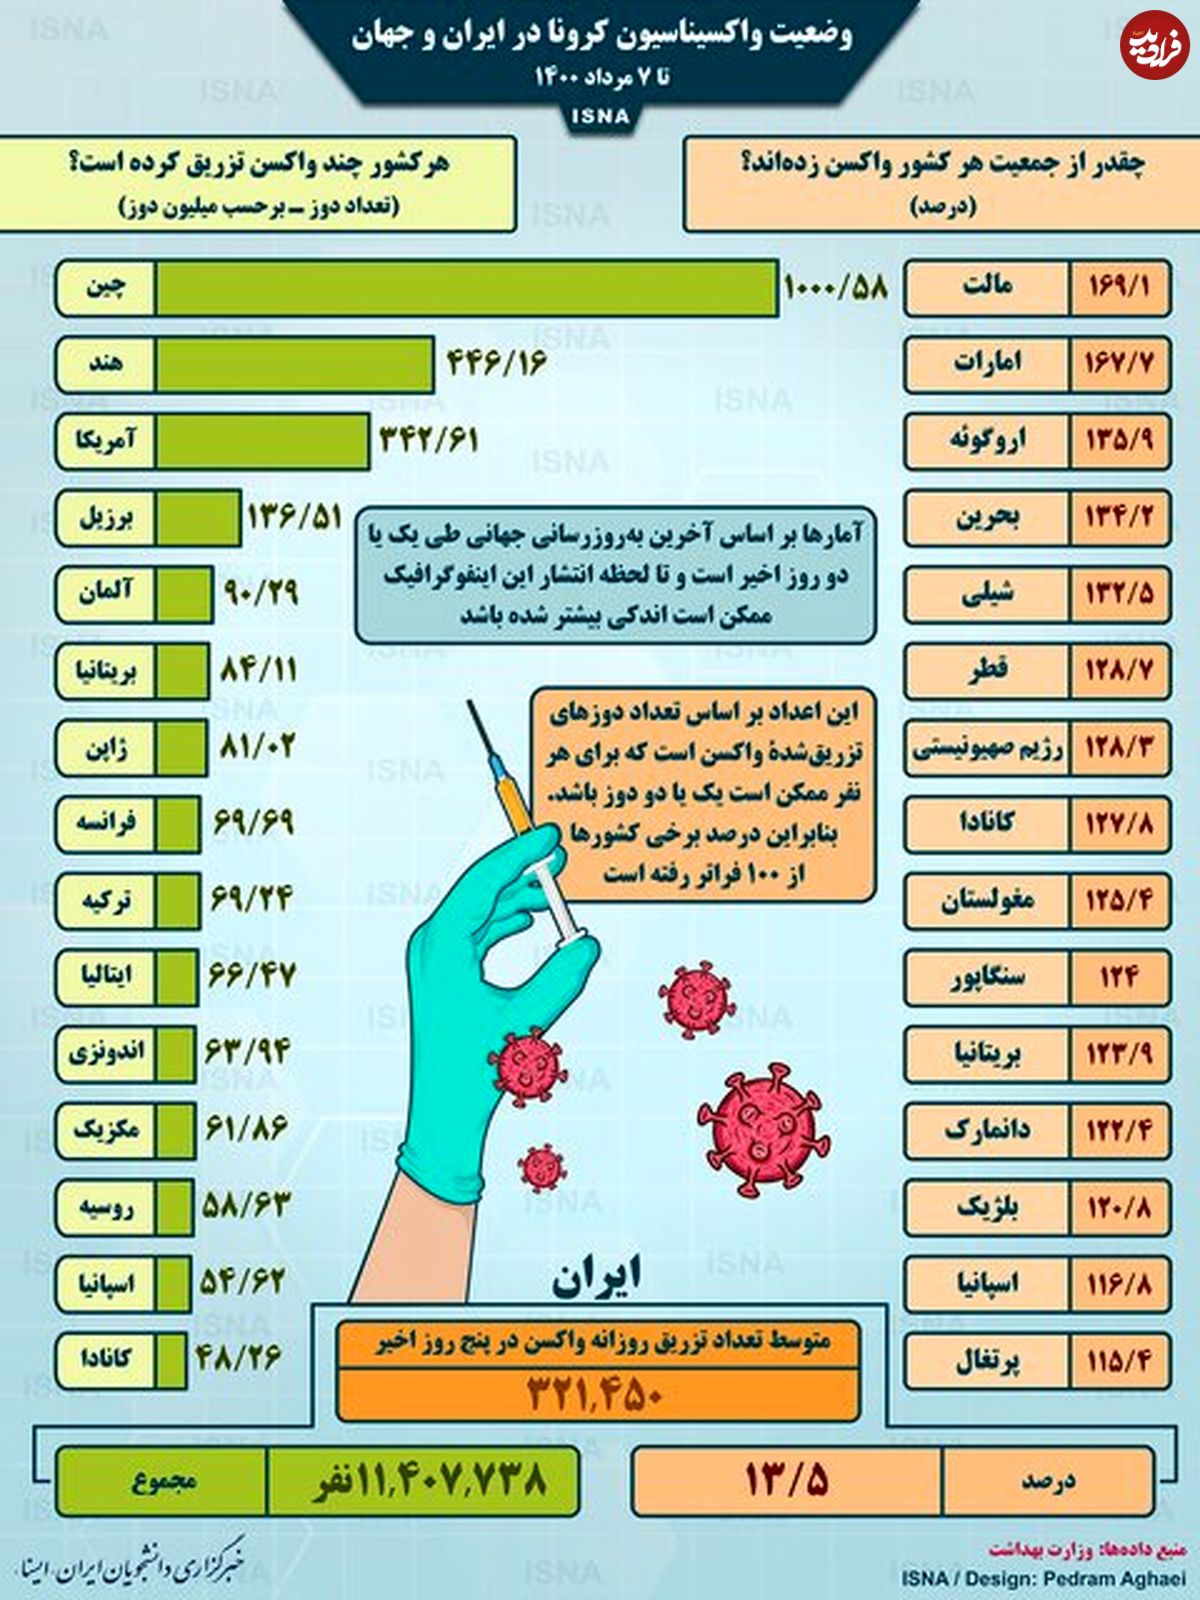 اینفوگرافی/ واکسیناسیون کرونا در ایران و جهان تا ۷ مرداد